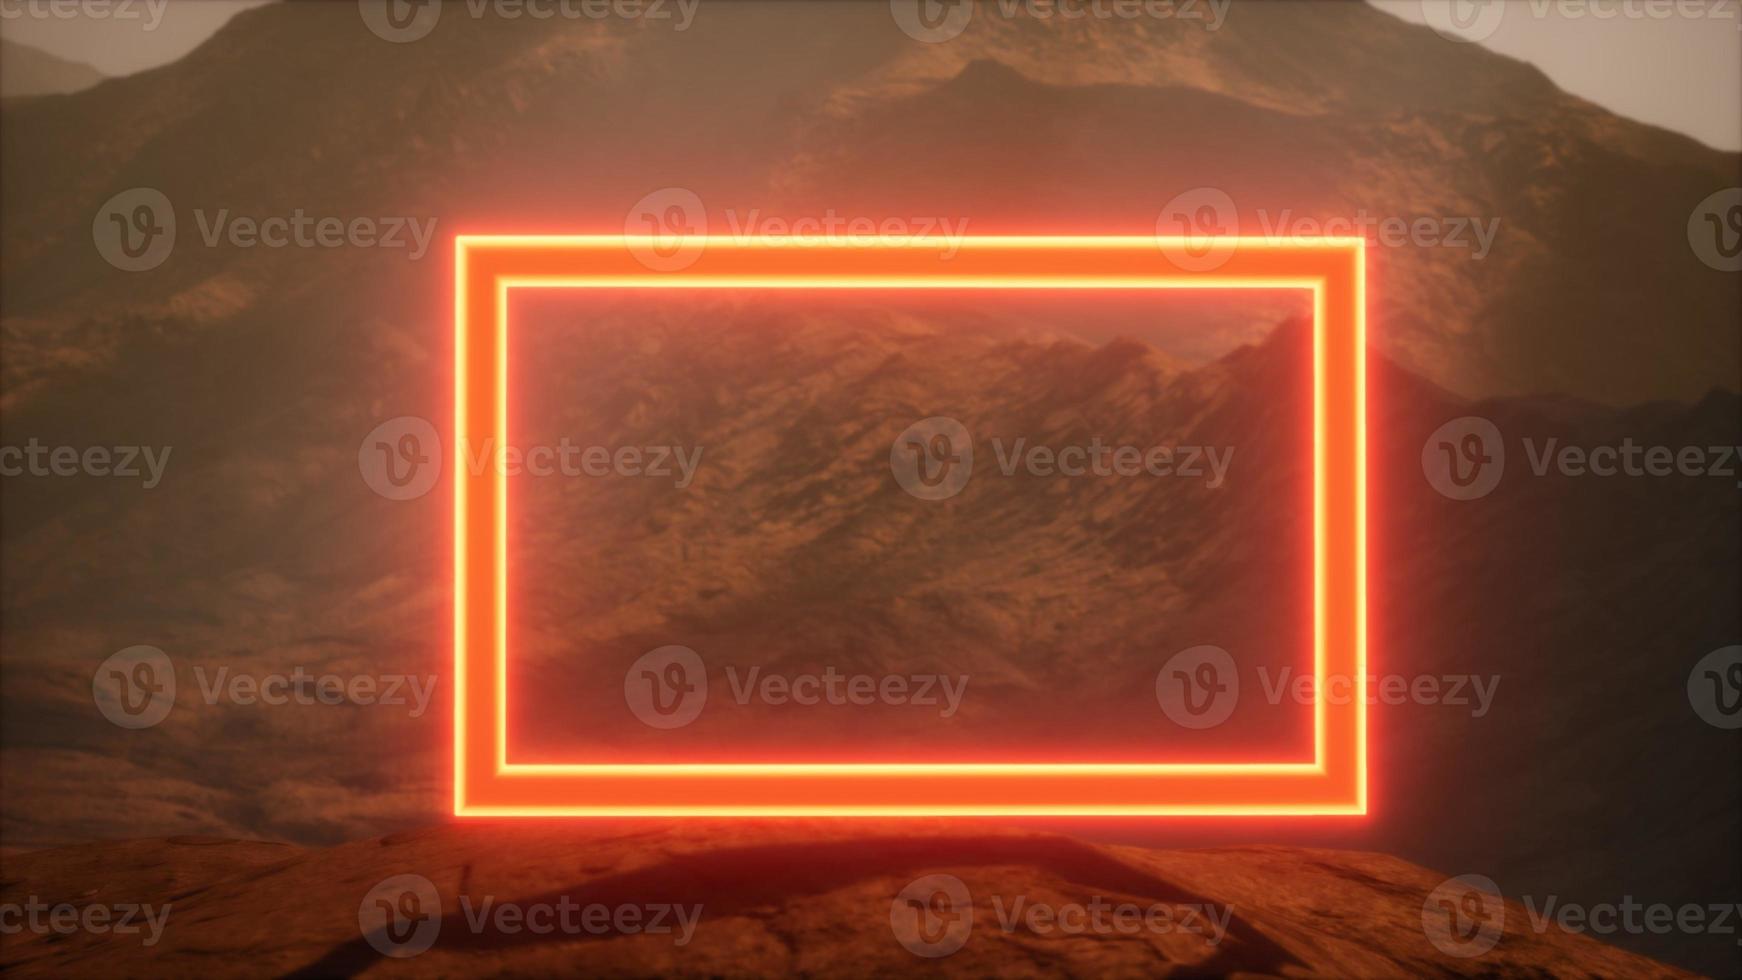 portal de neon na superfície do planeta marte com poeira soprando foto